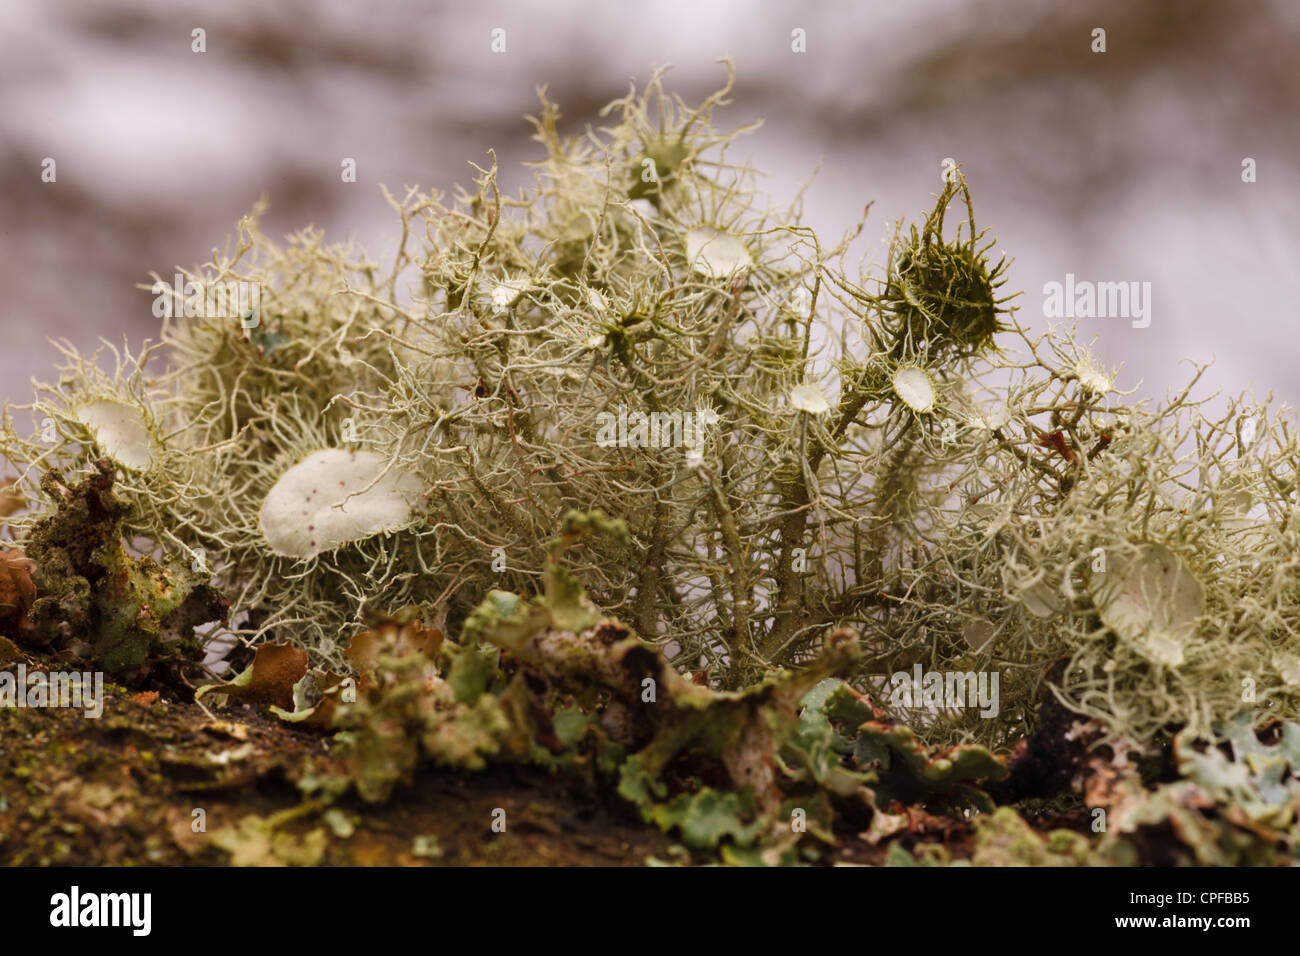 Les moustaches des sorcières (lichens Usnea florida) croissant sur une branche de chêne. Powys, Pays de Galles. Février. Banque D'Images